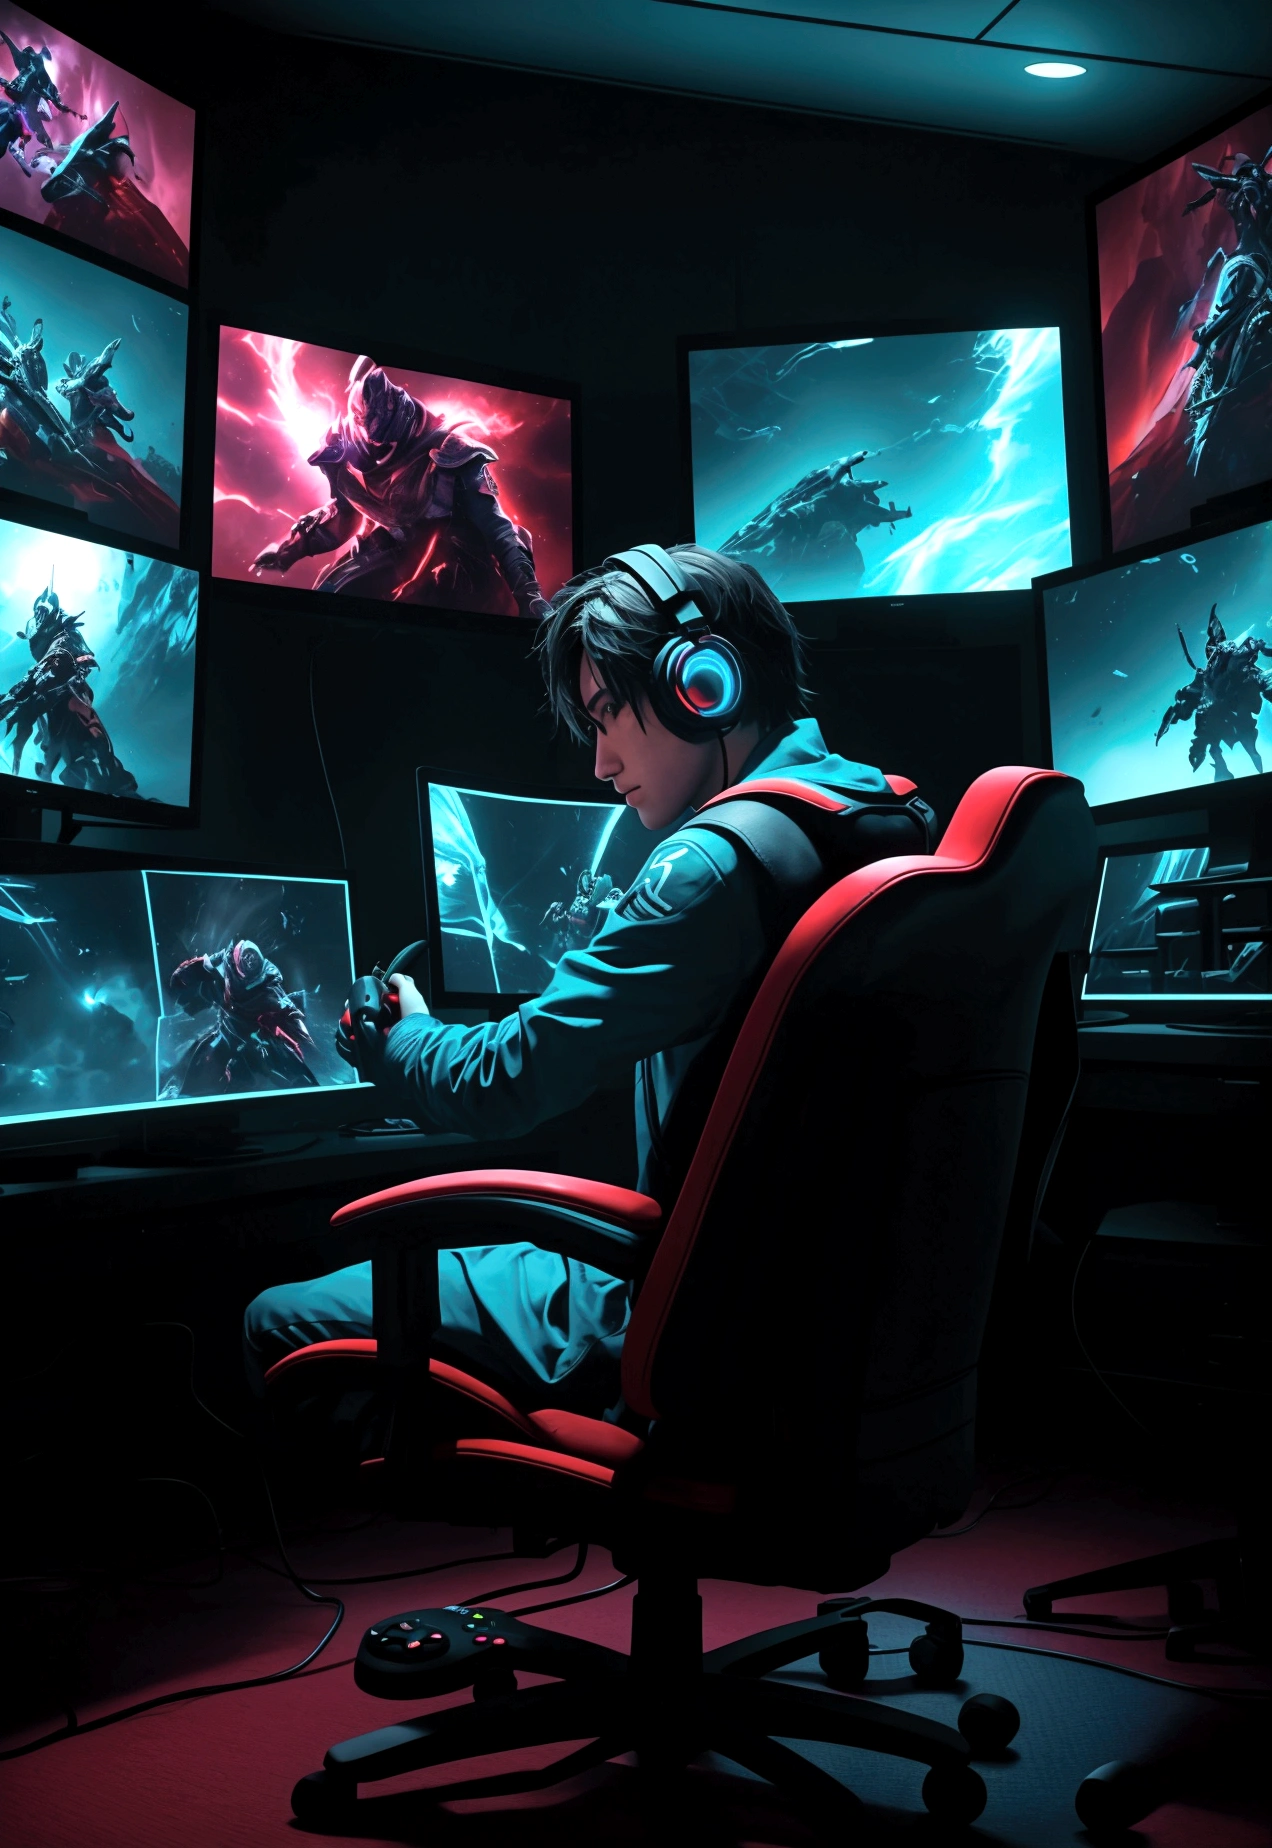 Ein lebendiges Bild eines Spielers mit einem Controller in der Hand, vor mehreren Bildschirmen mit verschiedenen Spielen.

Grafische Elemente, die Konsolen und Bedienelementen ähneln.